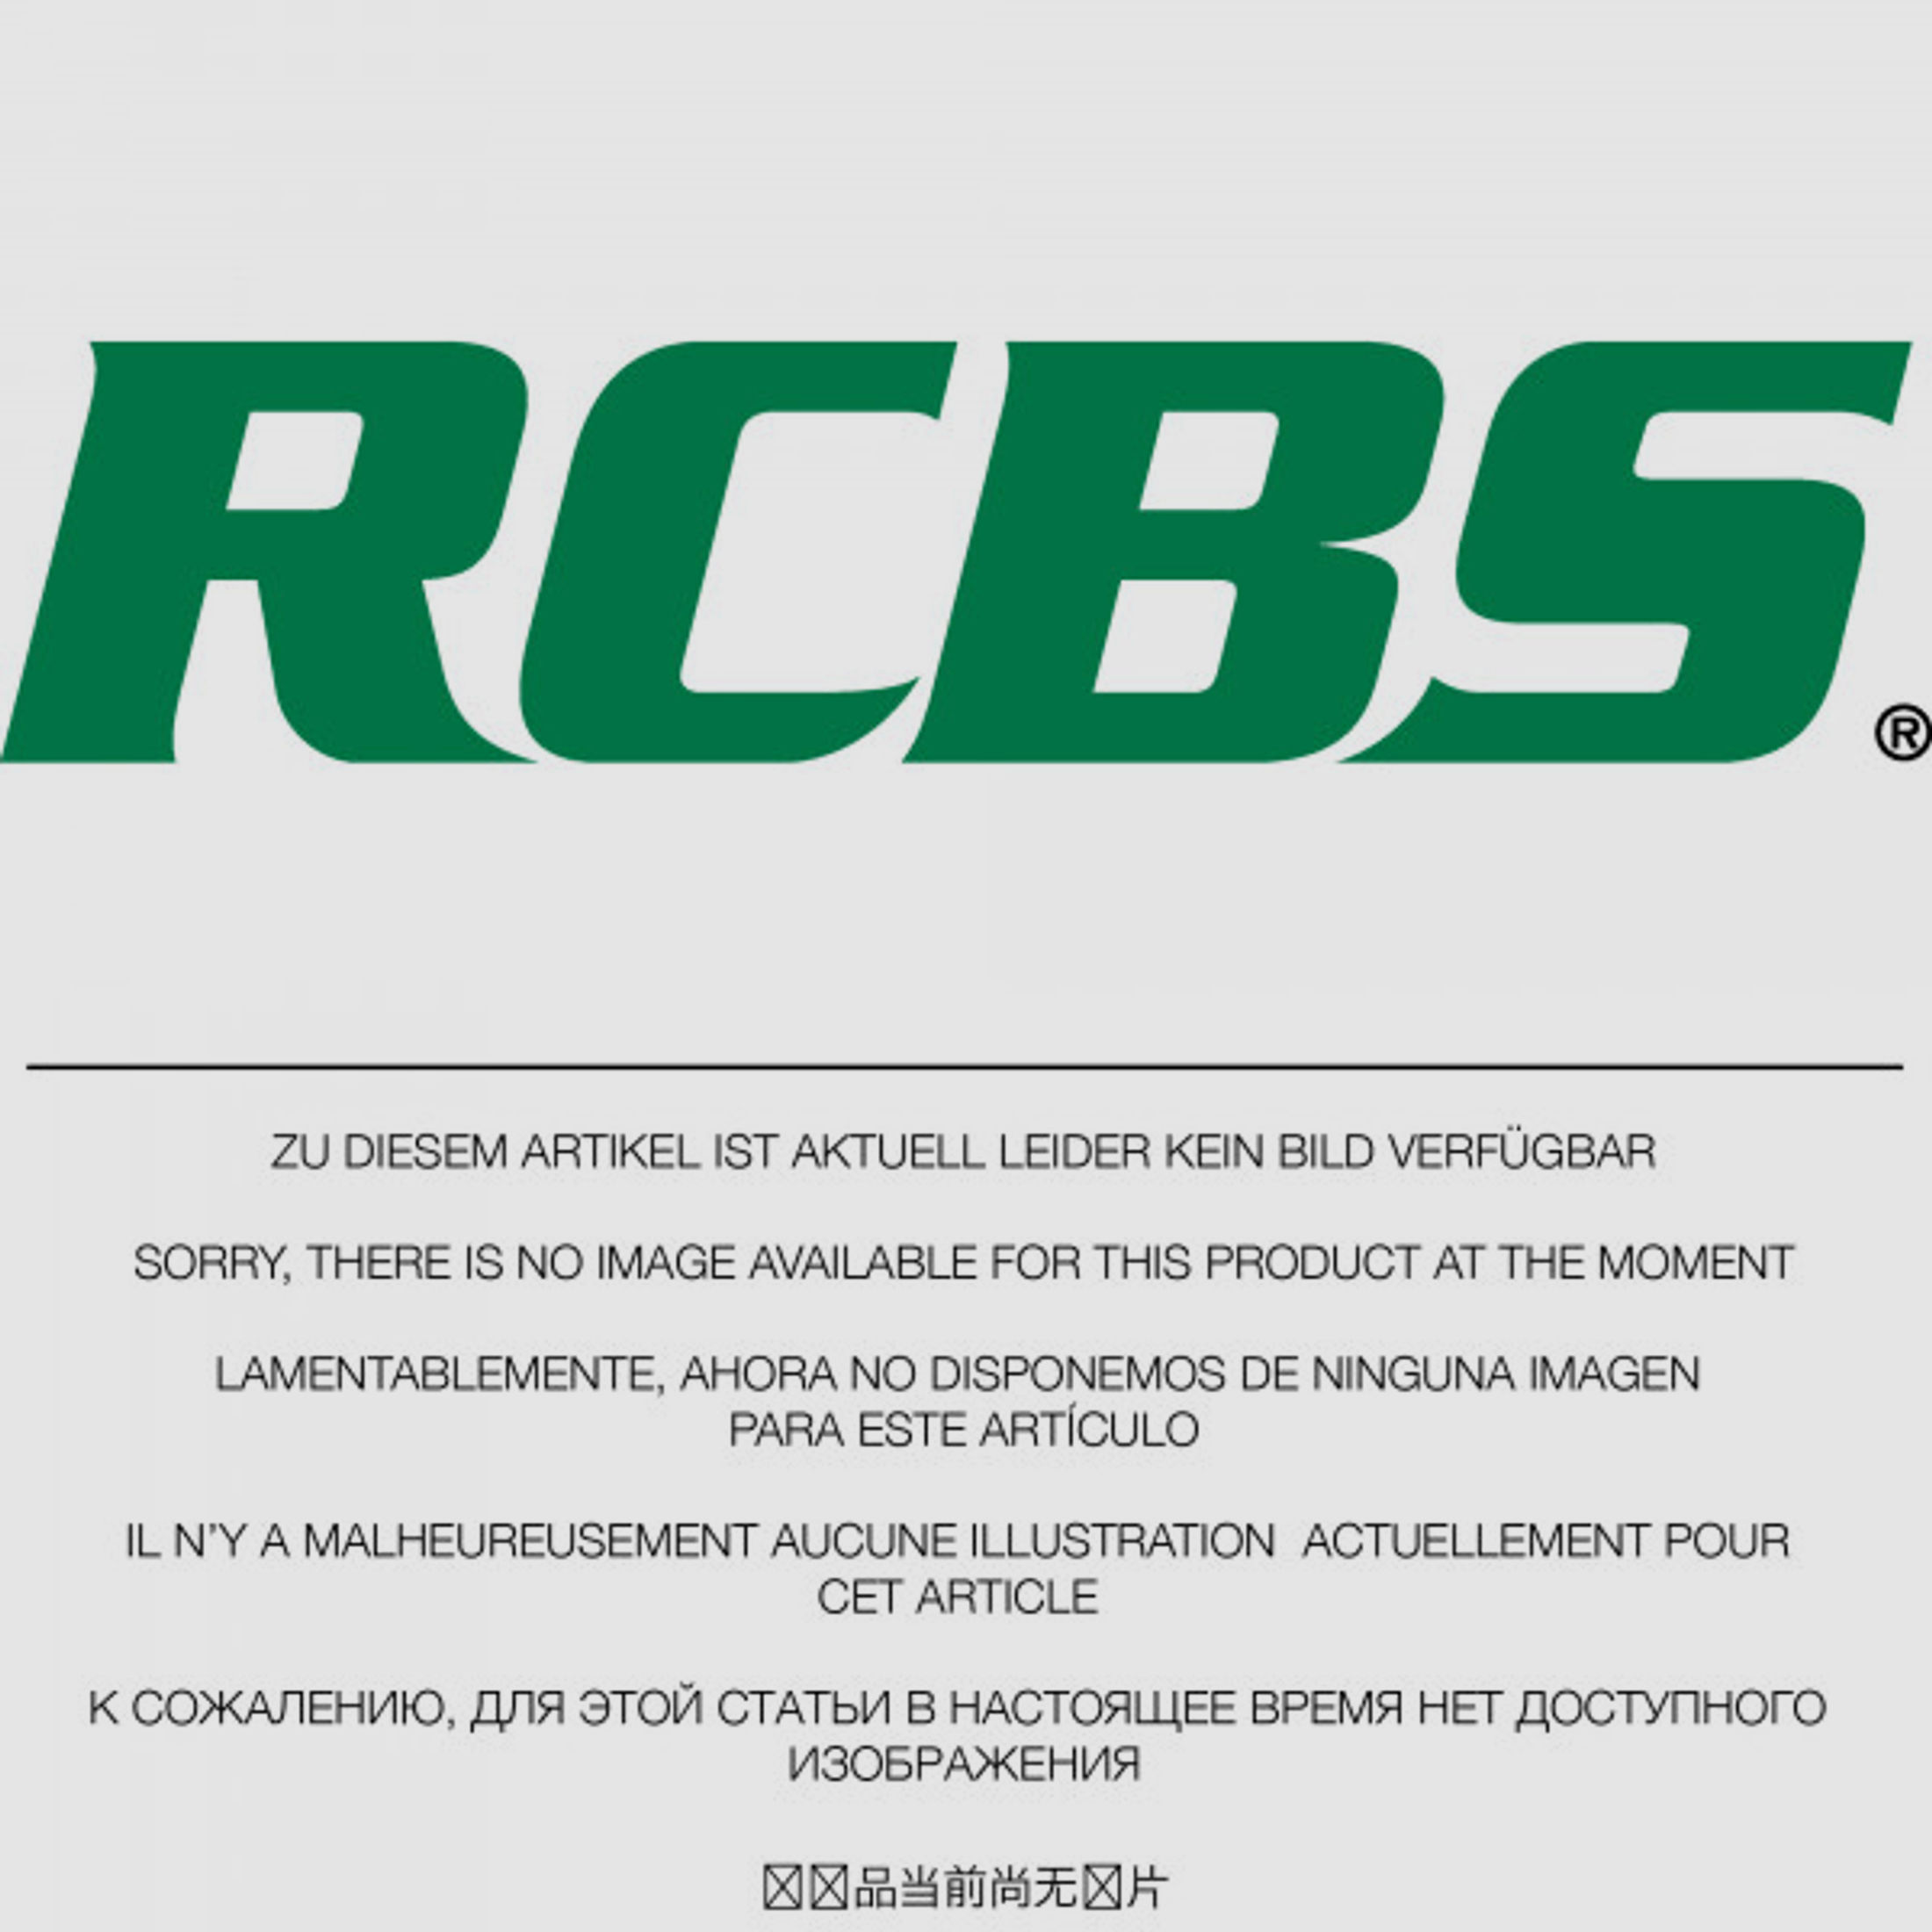 RCBS Lube-A-Matic Top Punch Geschoss Setzstempel Nr. 444 #82542